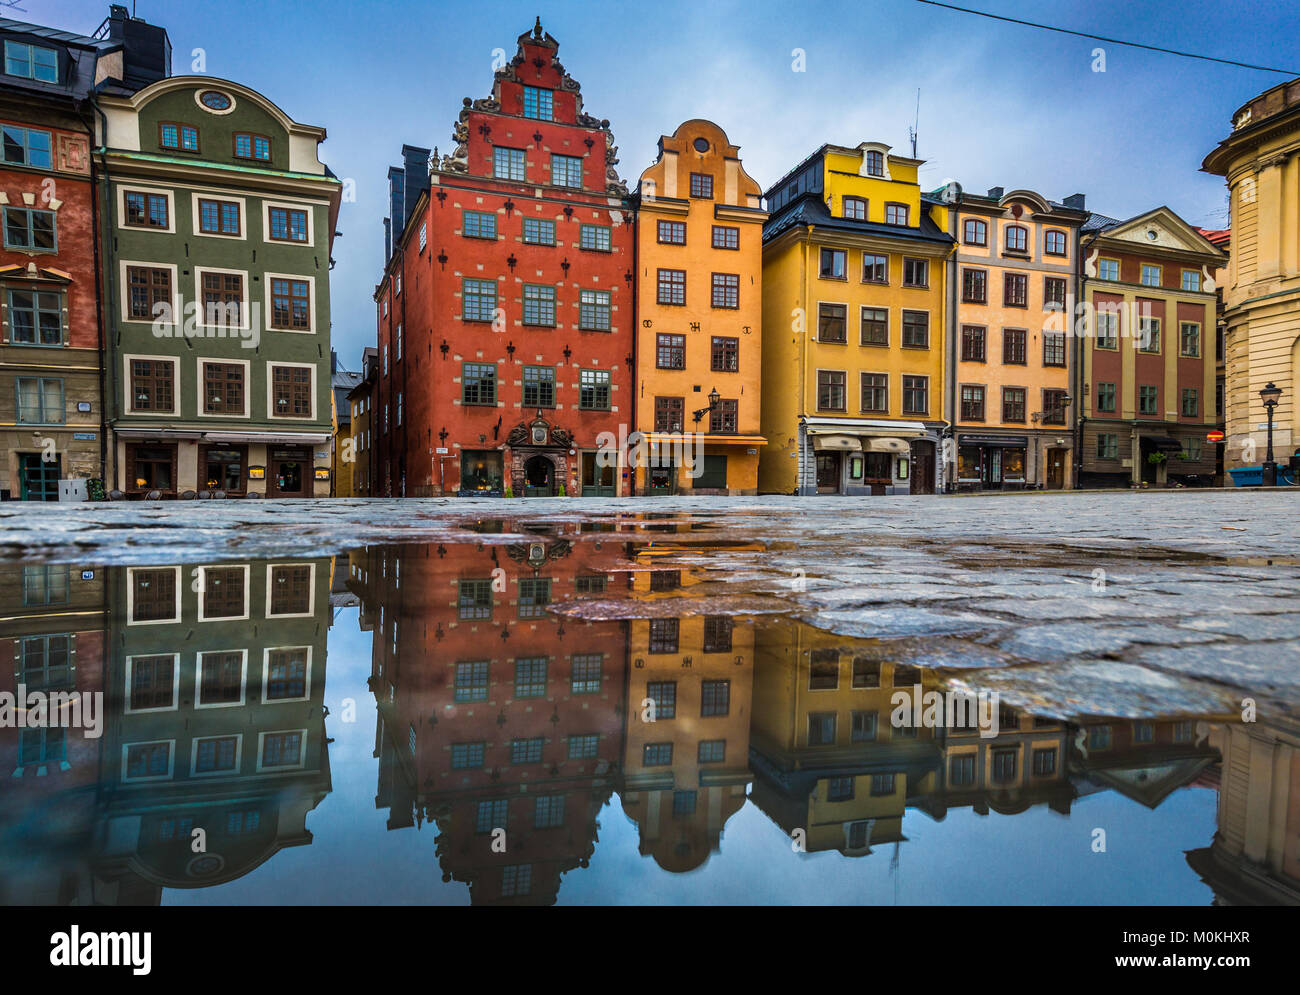 Bunte Häuser am berühmten stortorget Stadtplatz in der Stockholmer Altstadt Gamla Stan (Altstadt) in einer Pfütze mit blauem Himmel, Stockholm, Schweden Stockfoto